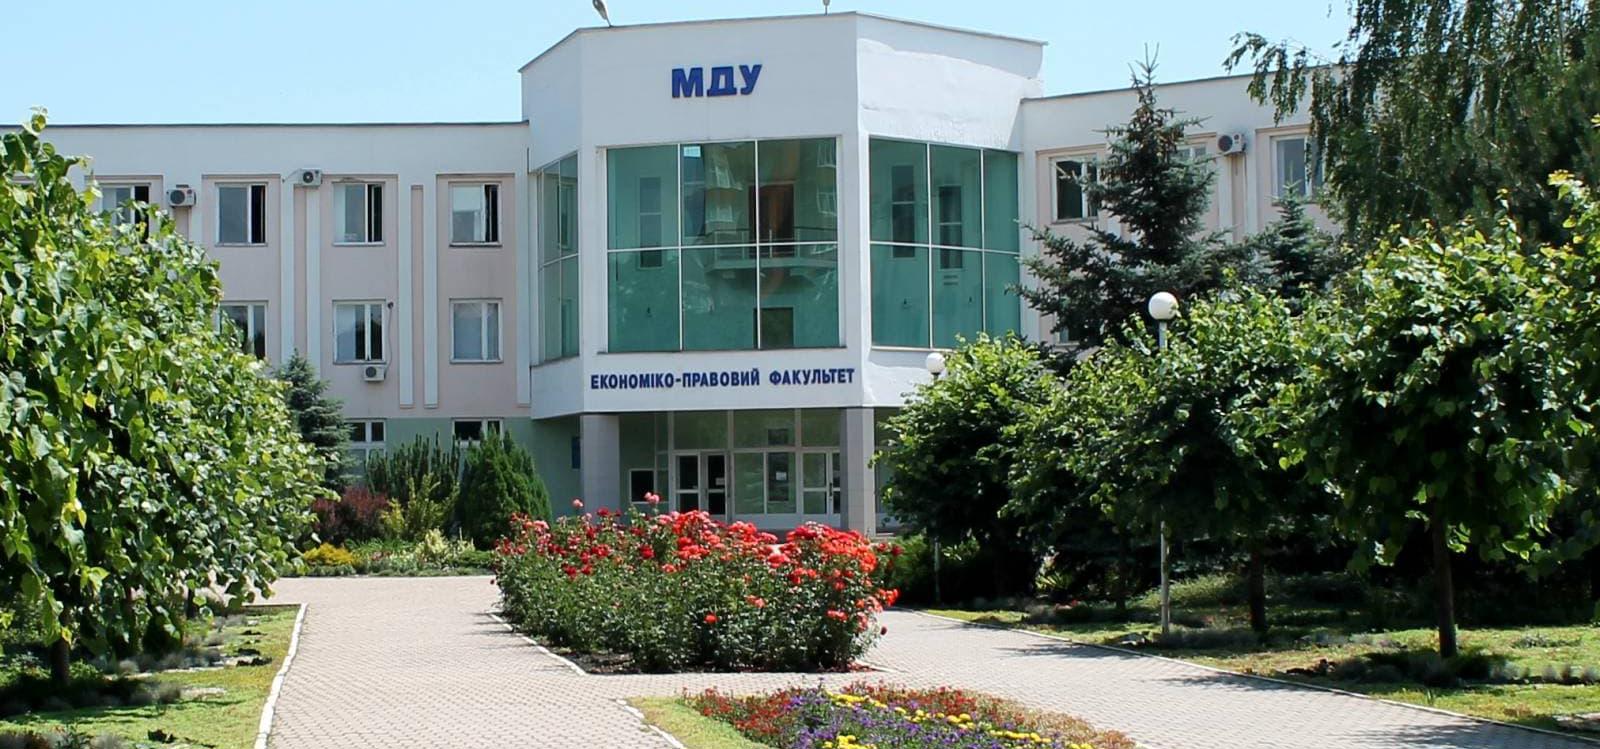 Mariupol State University